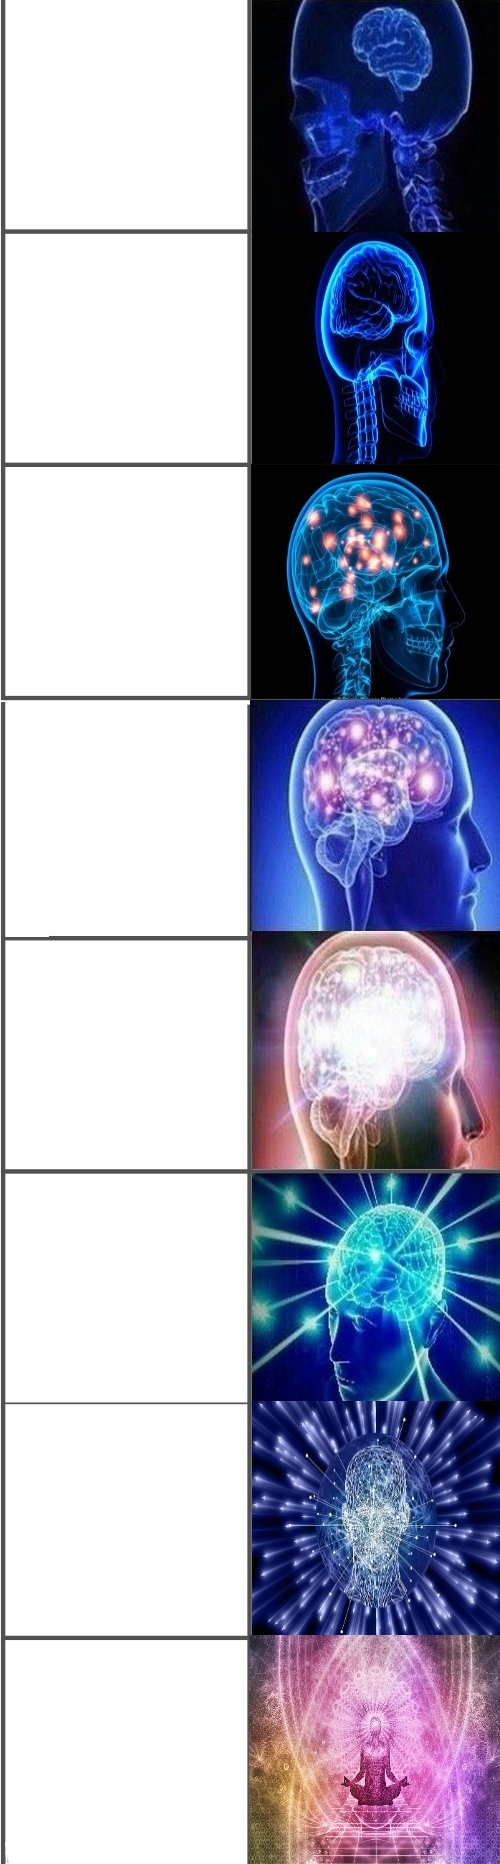 Expanding brain extended 8 panels Blank Meme Template